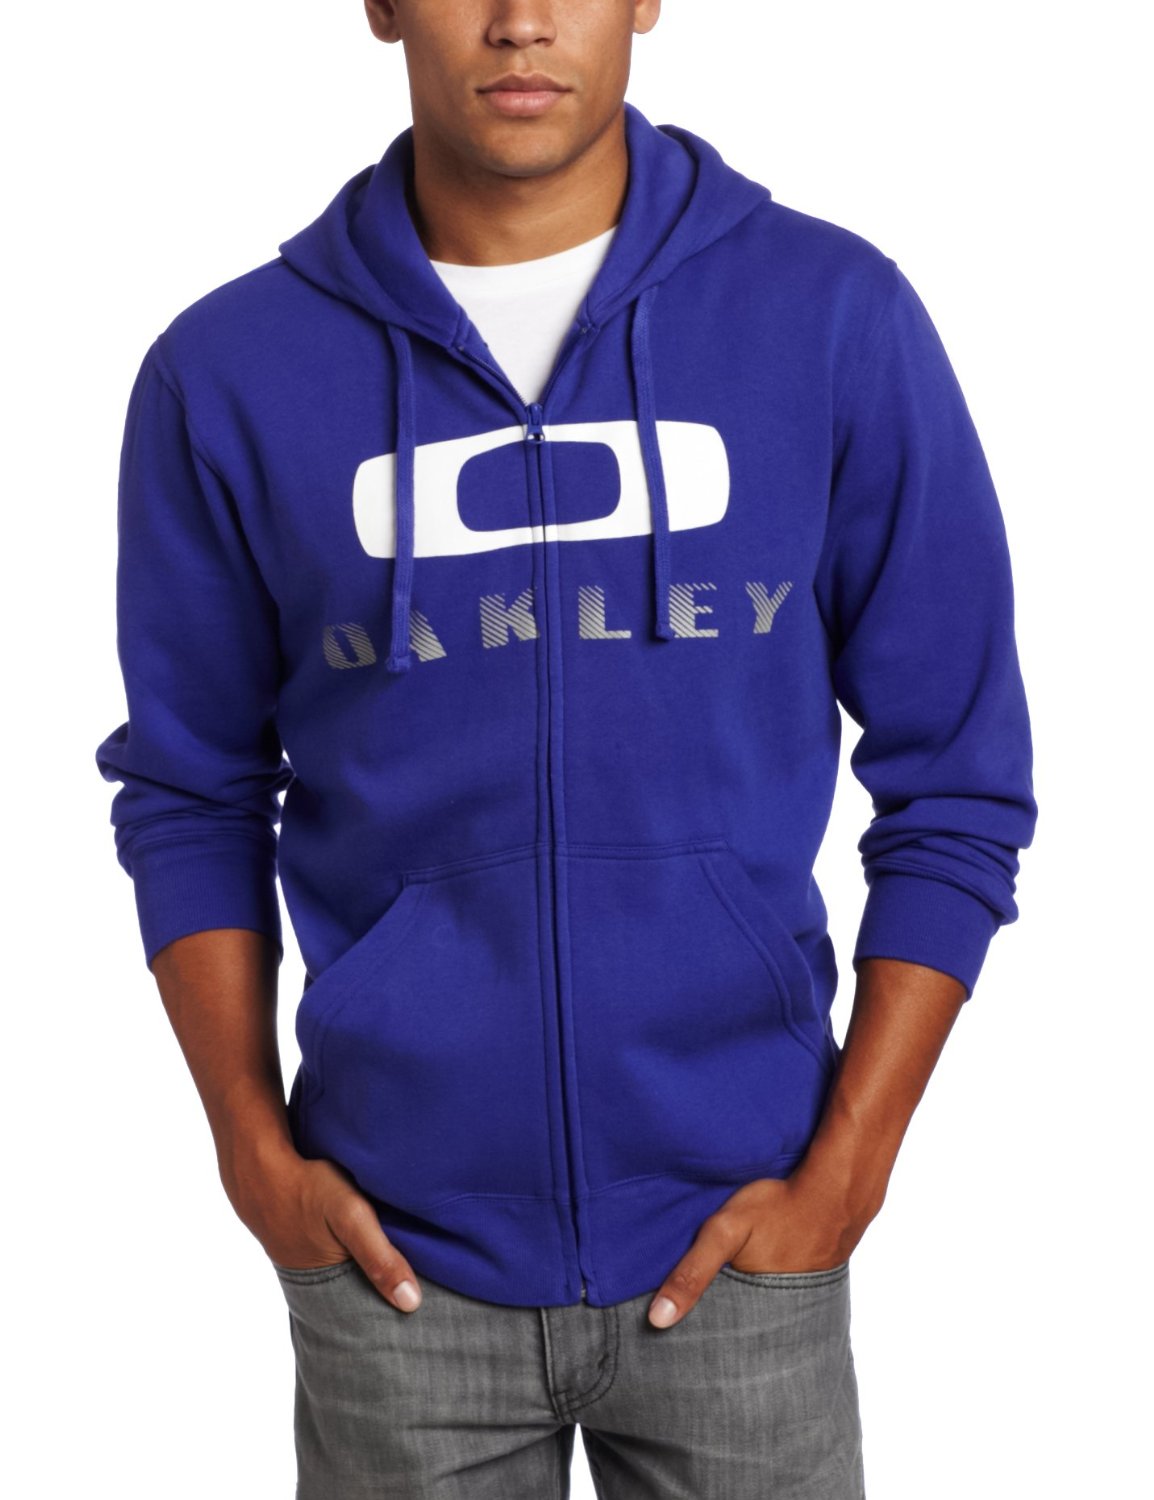 oakley hoodie sale